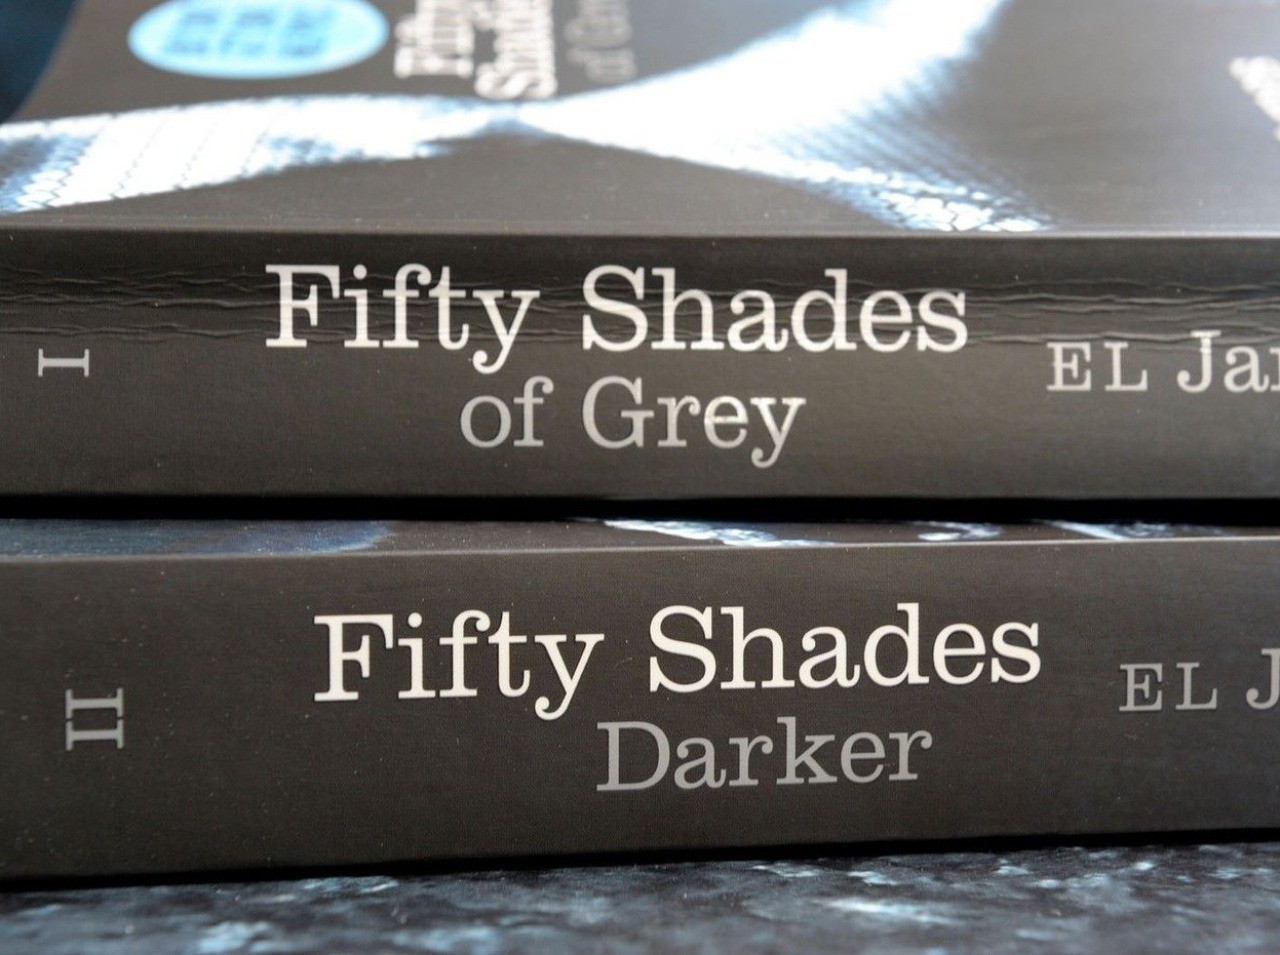 Známa kniha Fifty Shades of Grey má negatívne účinky .